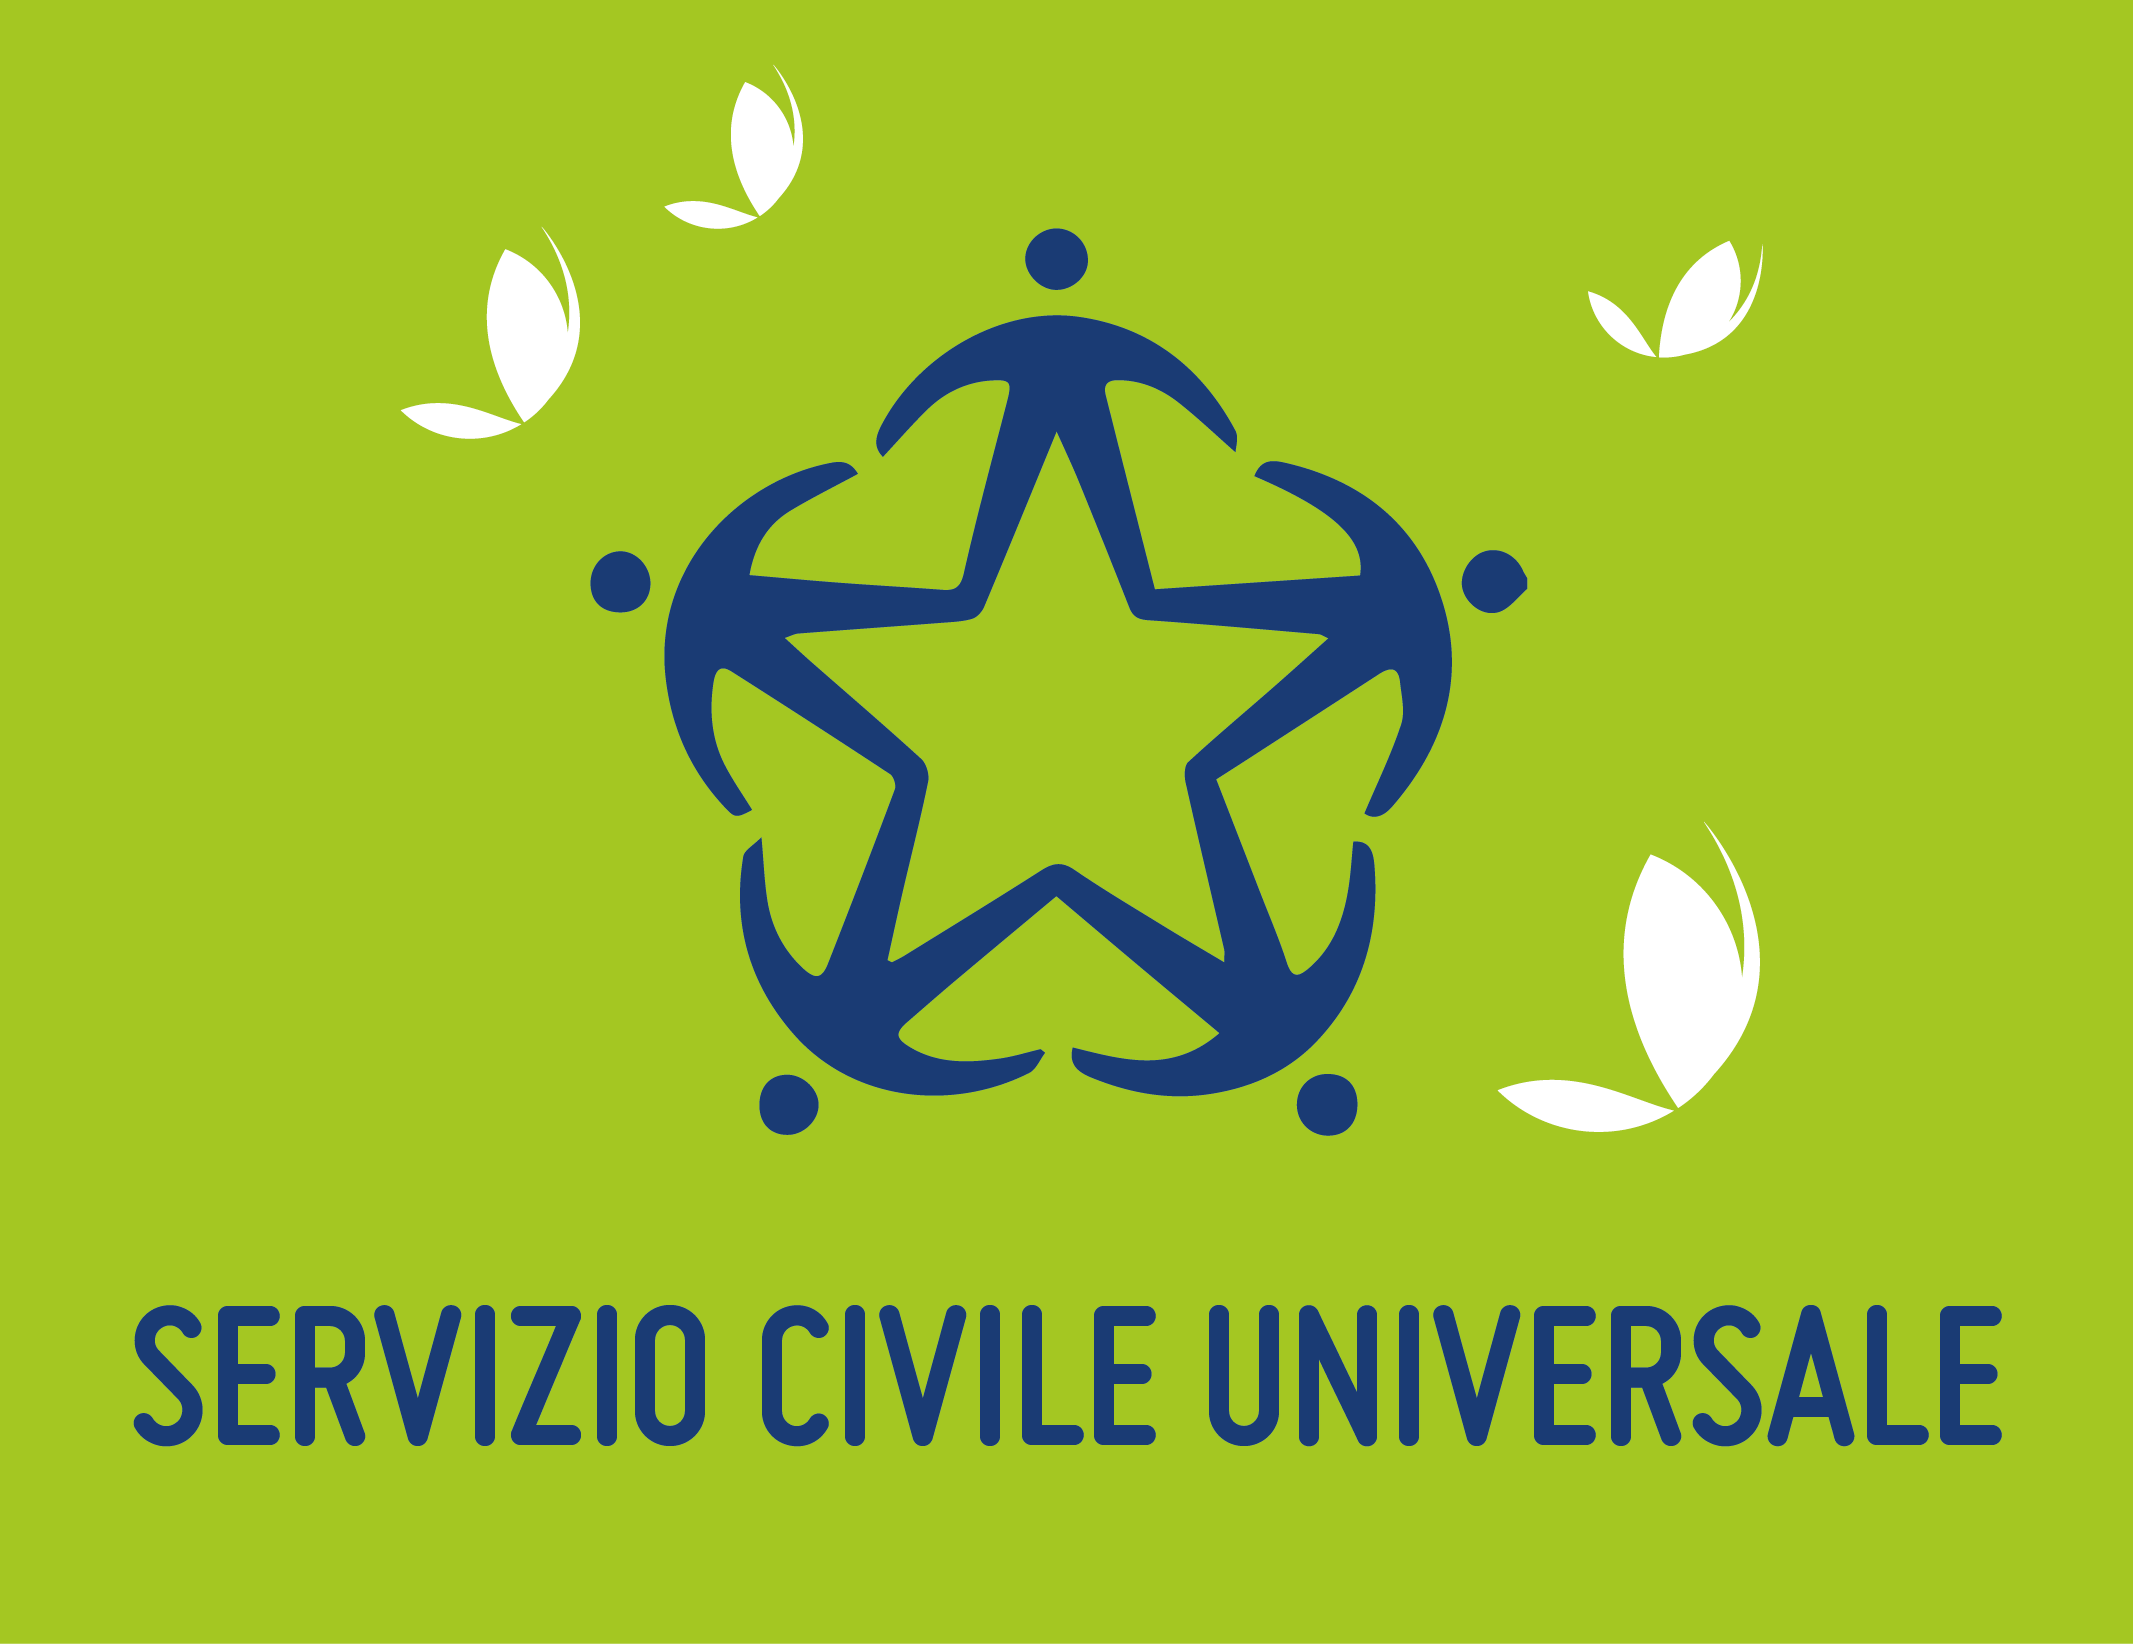 Servizio Civile Universale